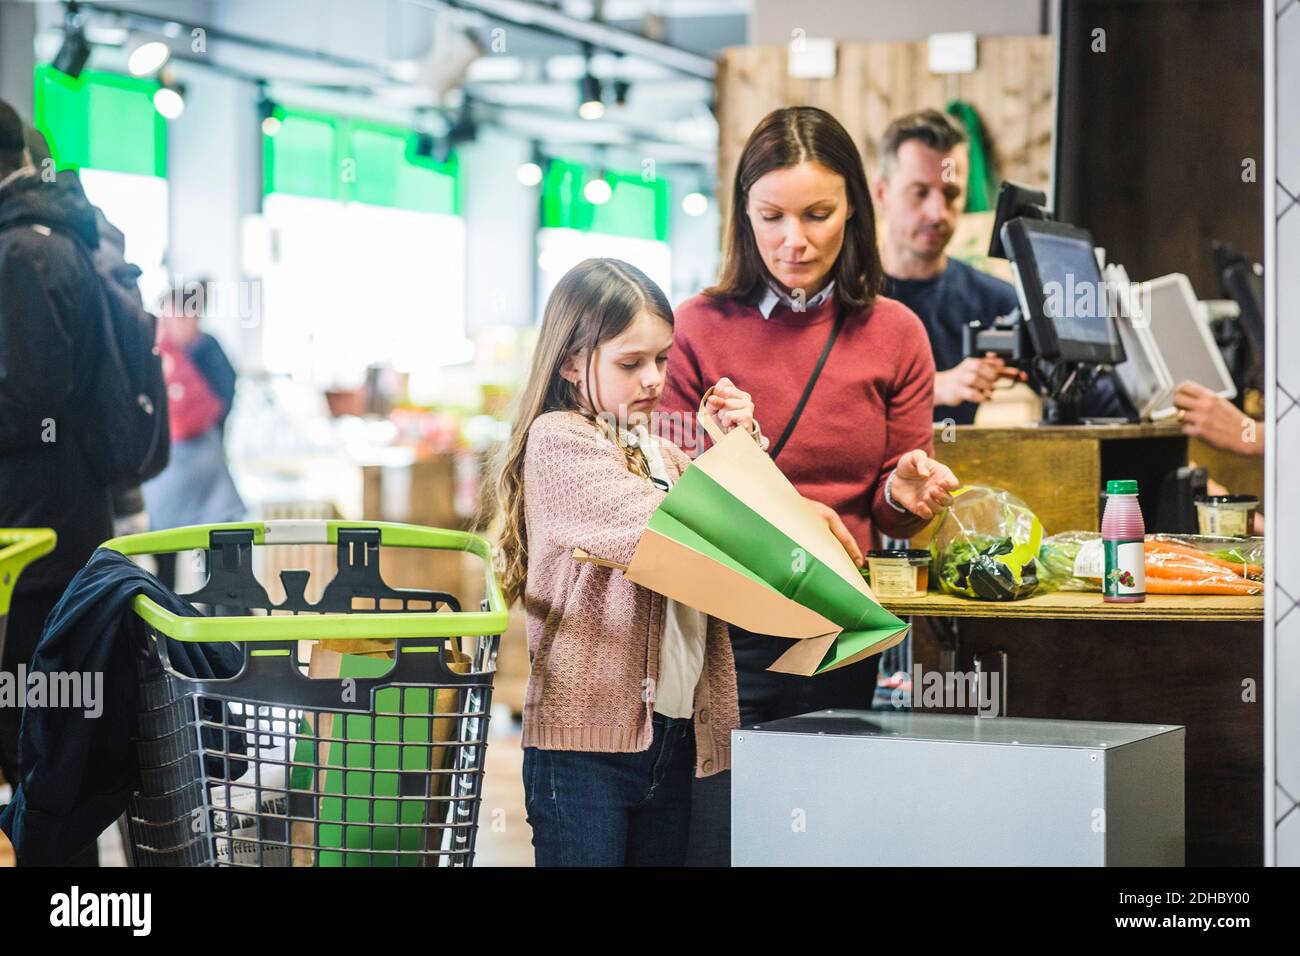 Tochter hält Papiertüte, während sie bei der Kasse bei der Mutter steht  Theke im Supermarkt Stockfotografie - Alamy